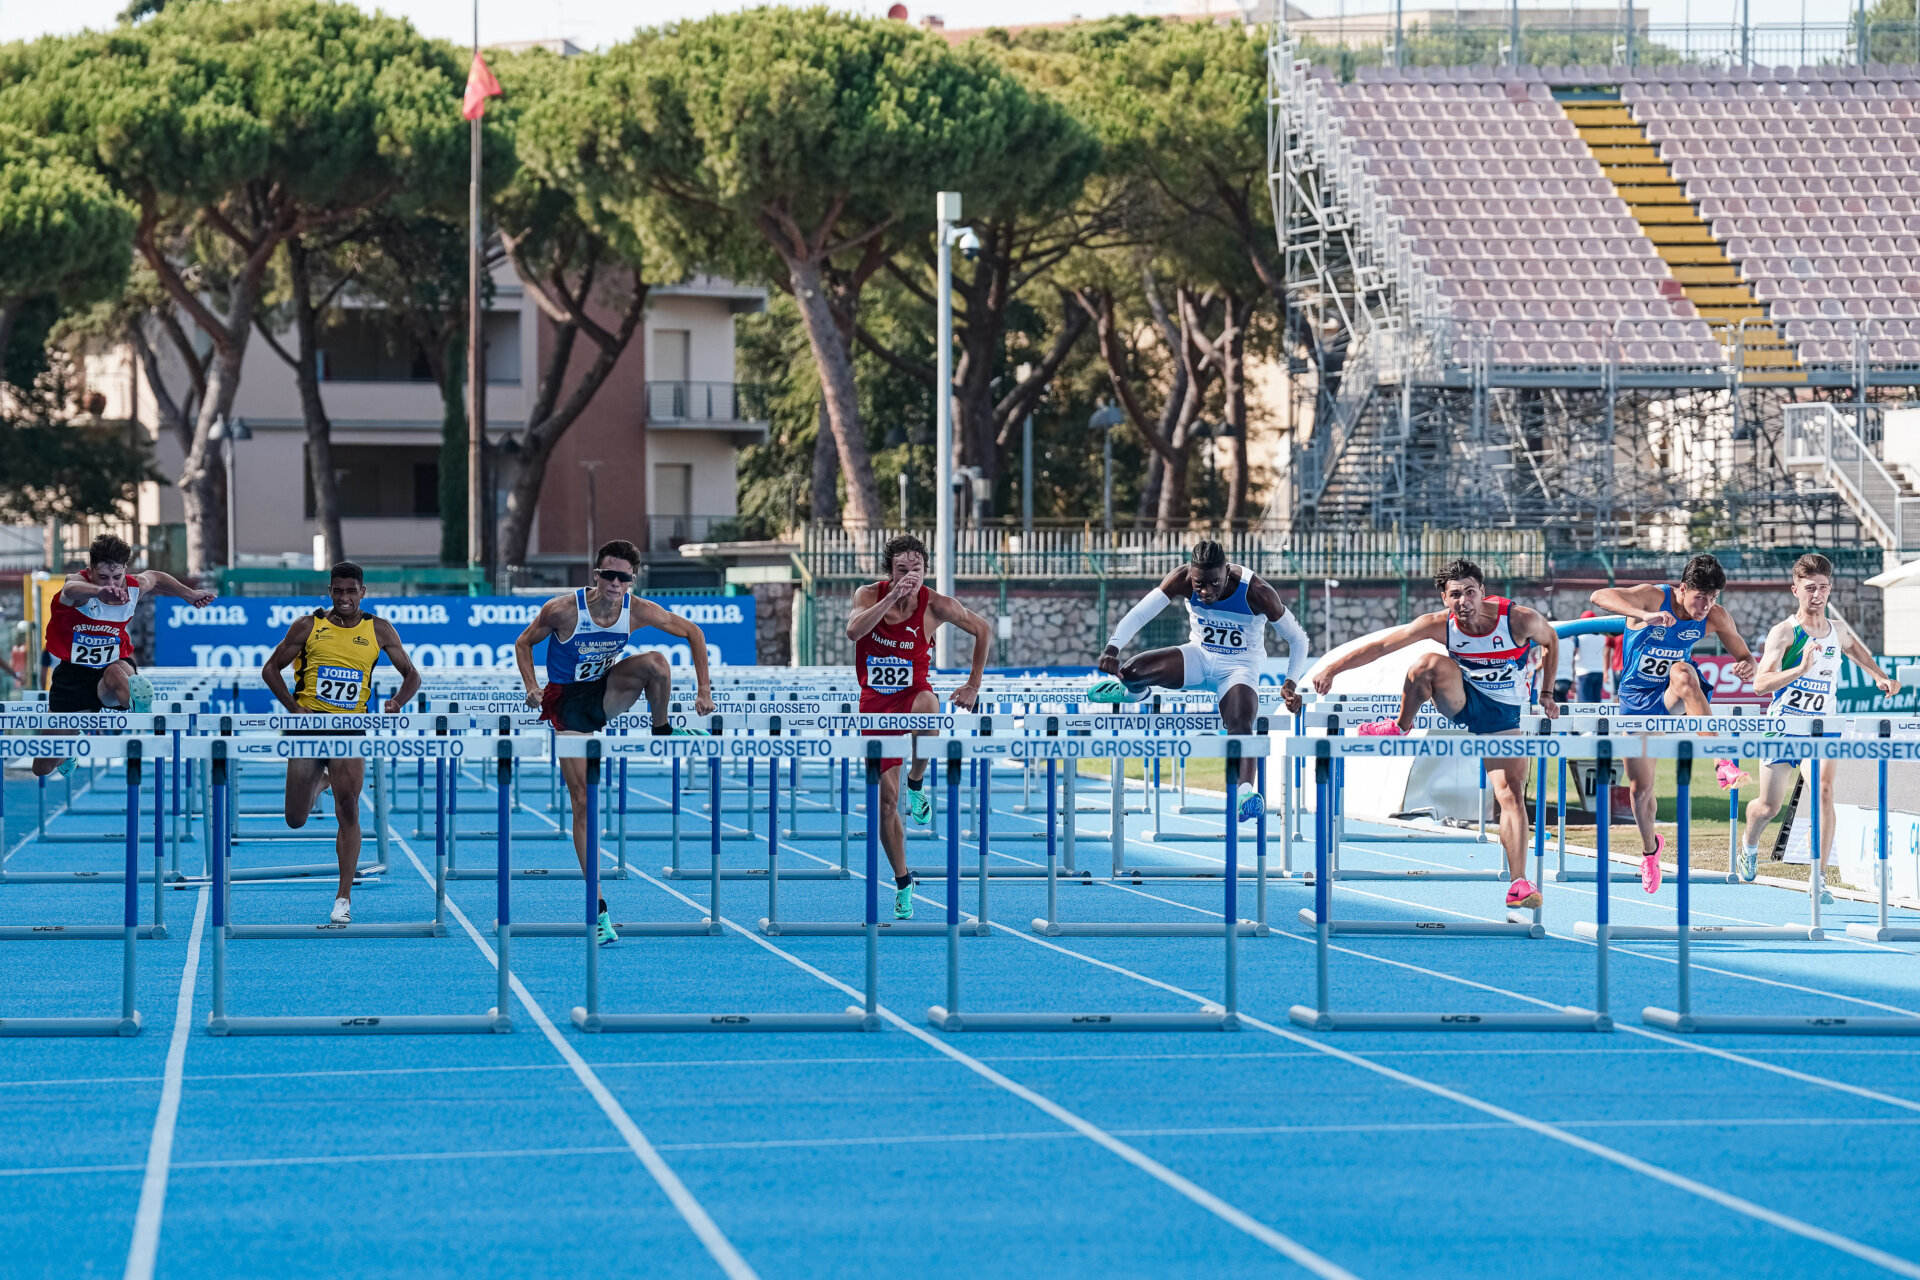 Campionati italiani U20 di atletica leggera | Grosseto, Stadio Zecchini, 21-23.07.2023 | Foto: Francesca Grana/FIDAL